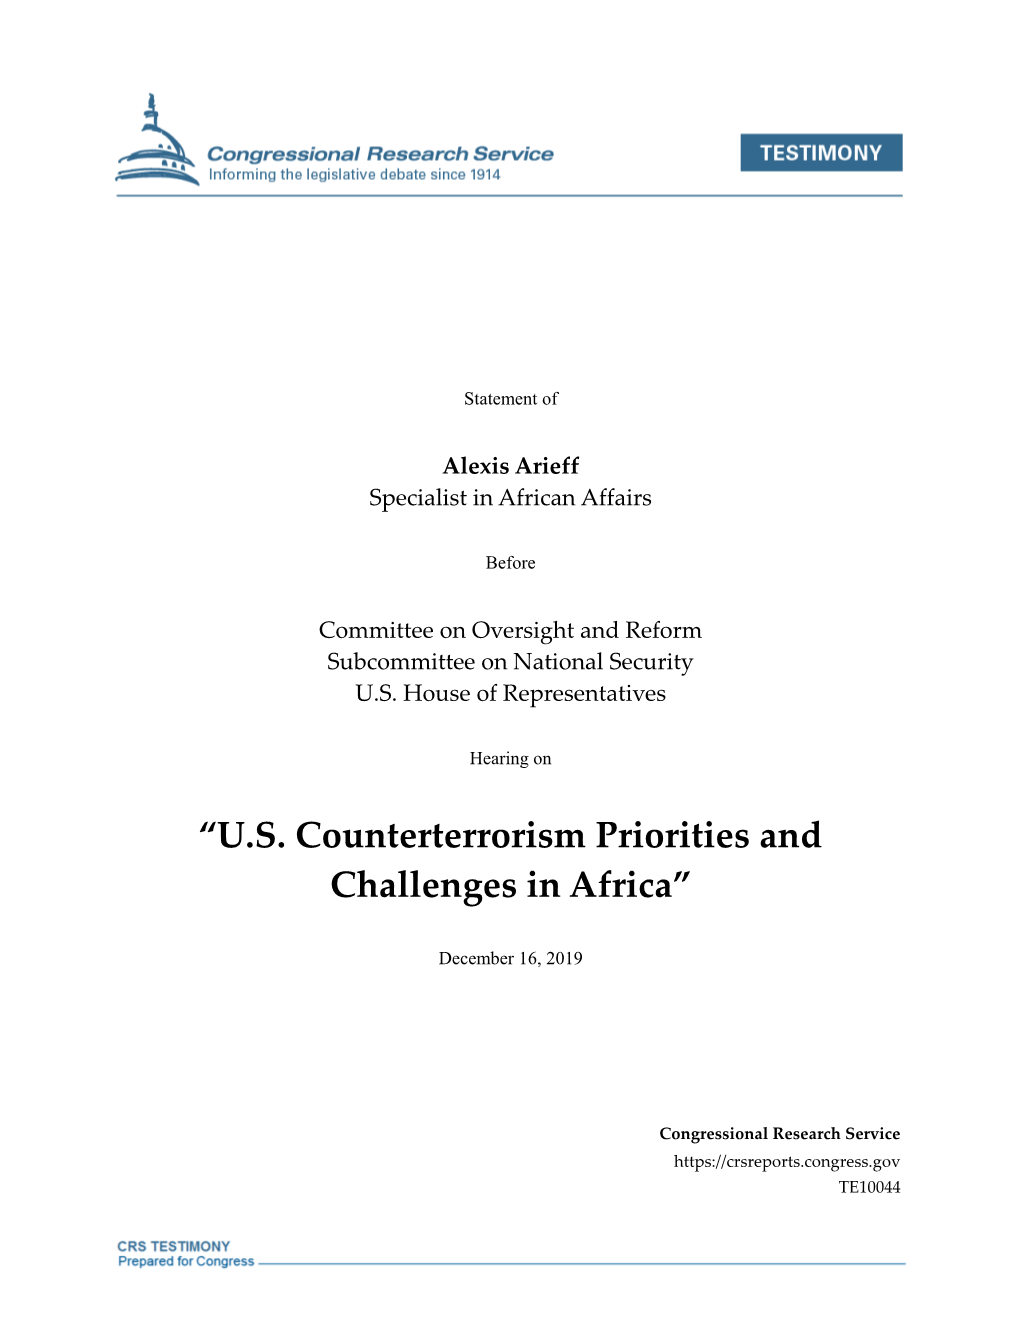 U.S. Counterterrorism Priorities and Challenges in Africa”